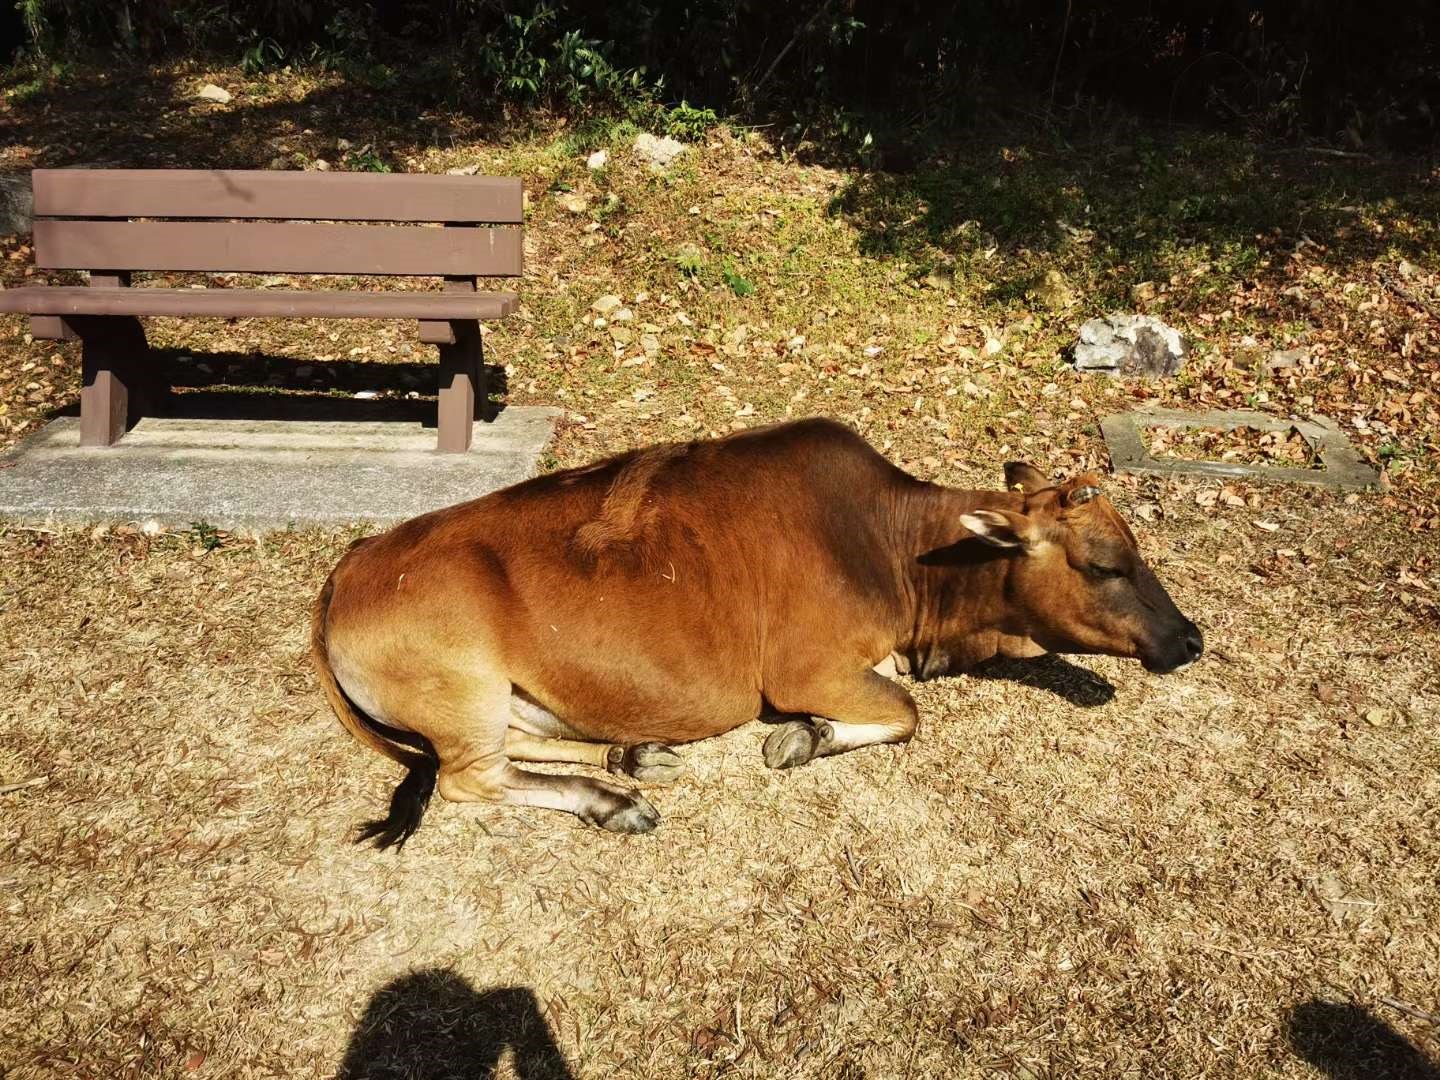 牛趴着的正确姿势图片